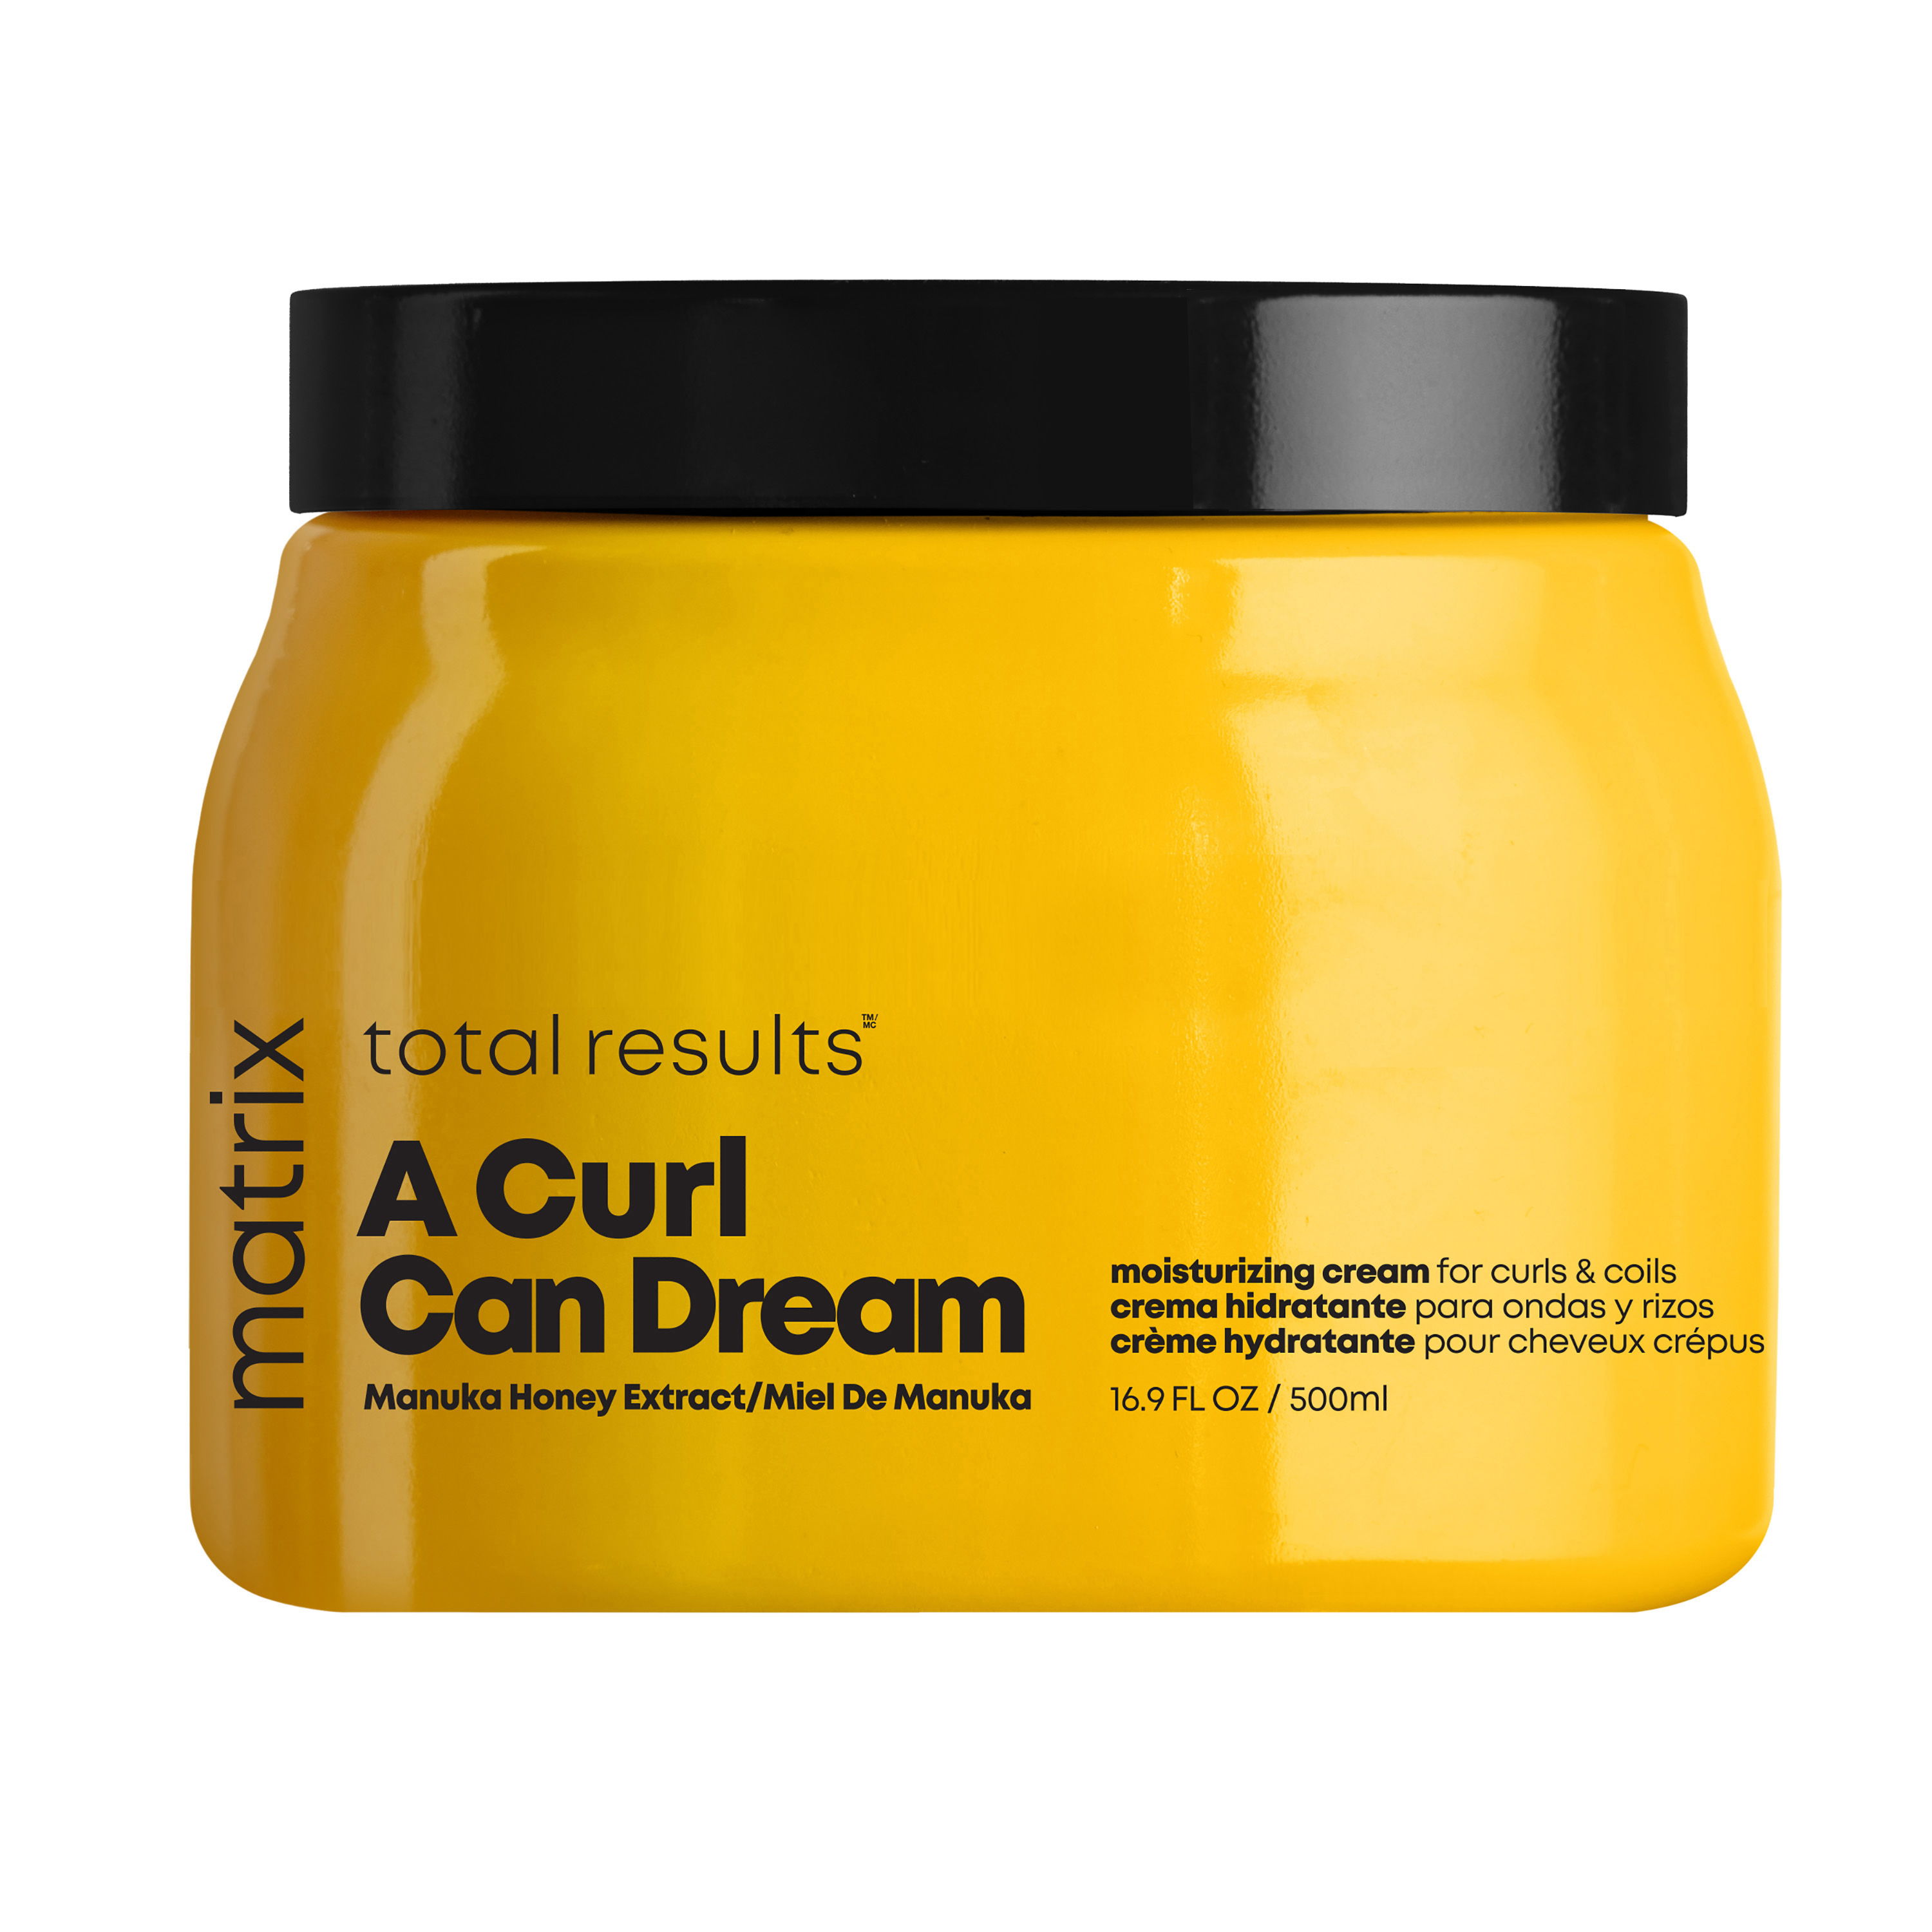 A Curl Can Dream Moisturizing Cream for curls & coils 34,50* €- 500ml